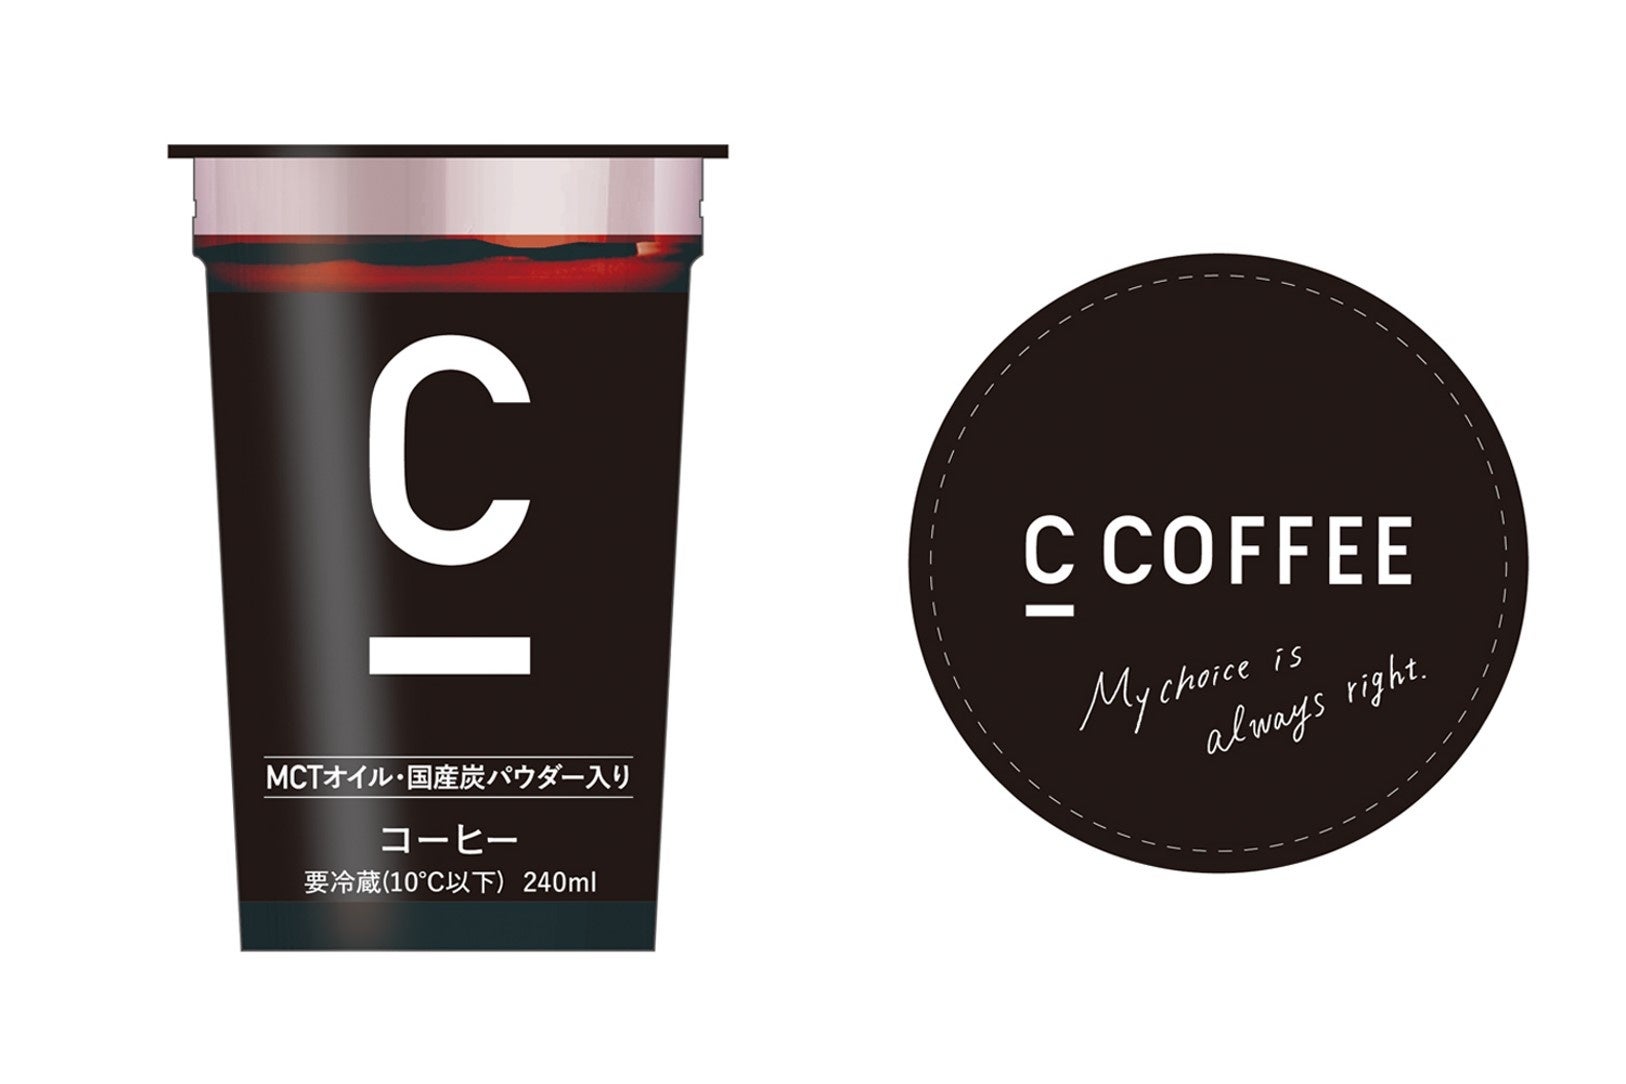 チャコールコーヒー「C COFFEE」初のチルドカップがファミリーマート限定で発売スタート